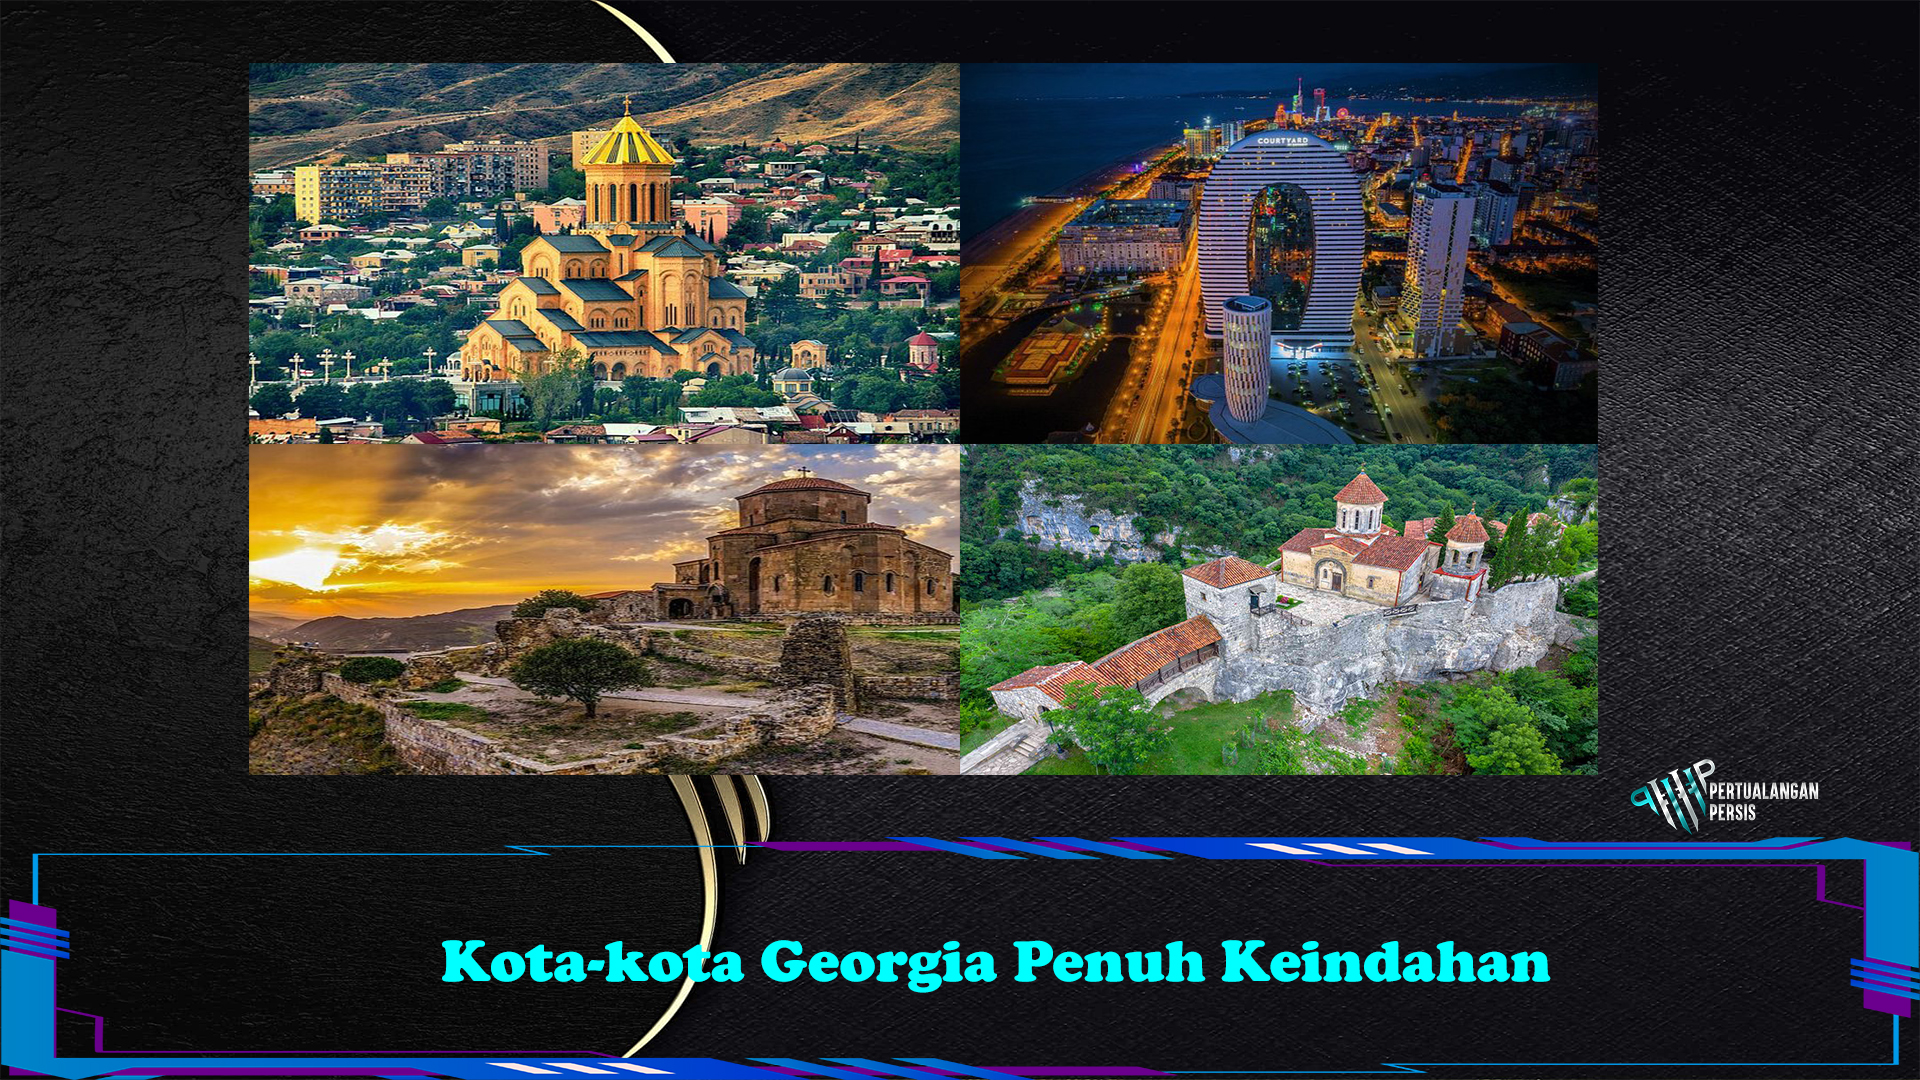 Kota-kota Georgia Penuh Keindahan